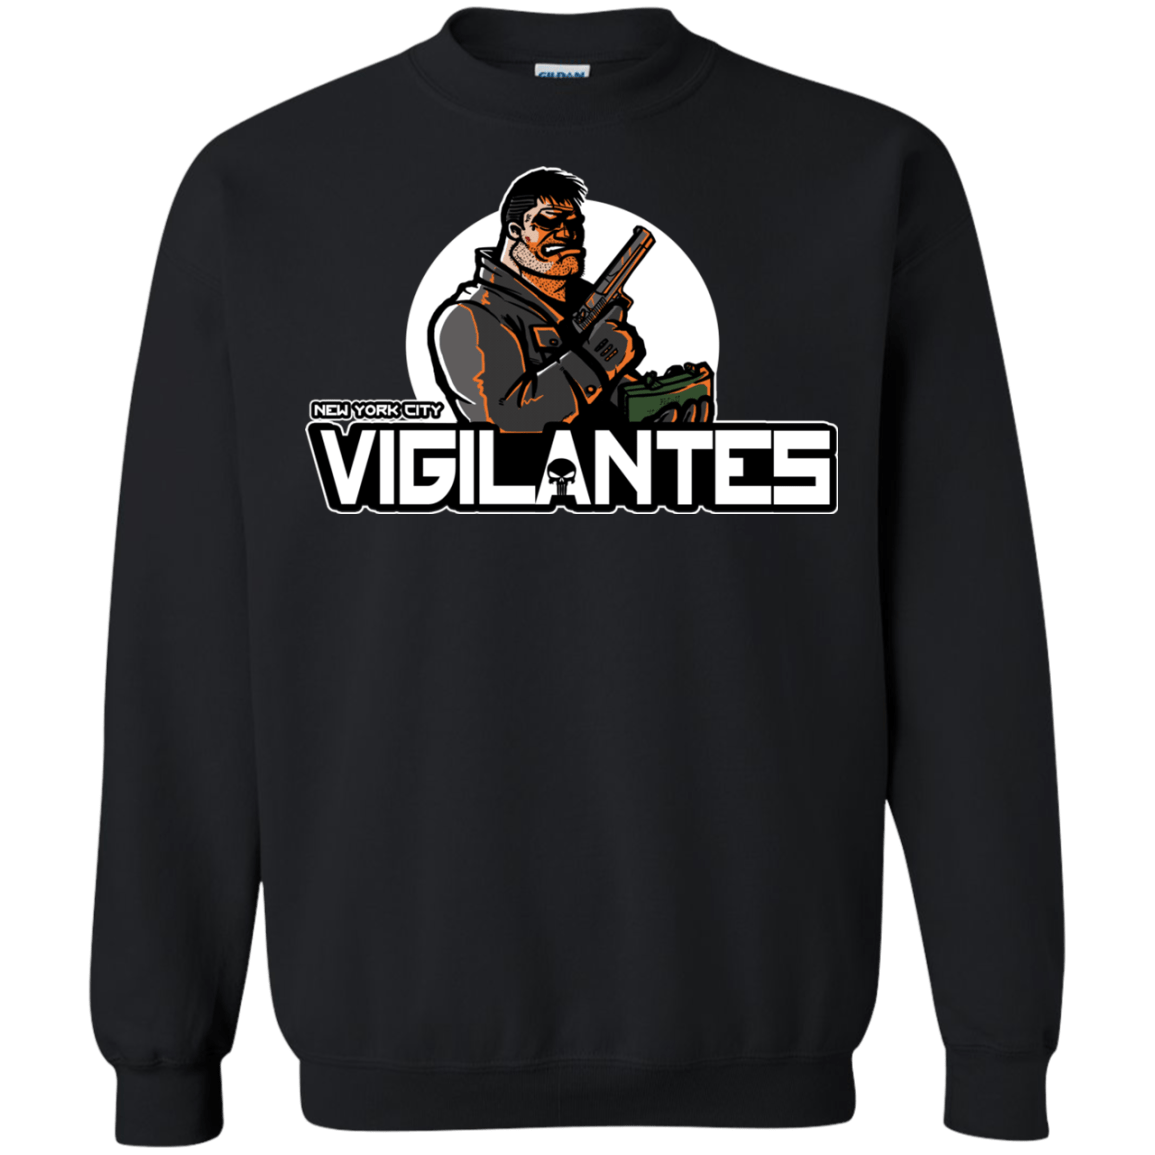 Sweatshirts Black / Small NYC Vigilantes Crewneck Sweatshirt